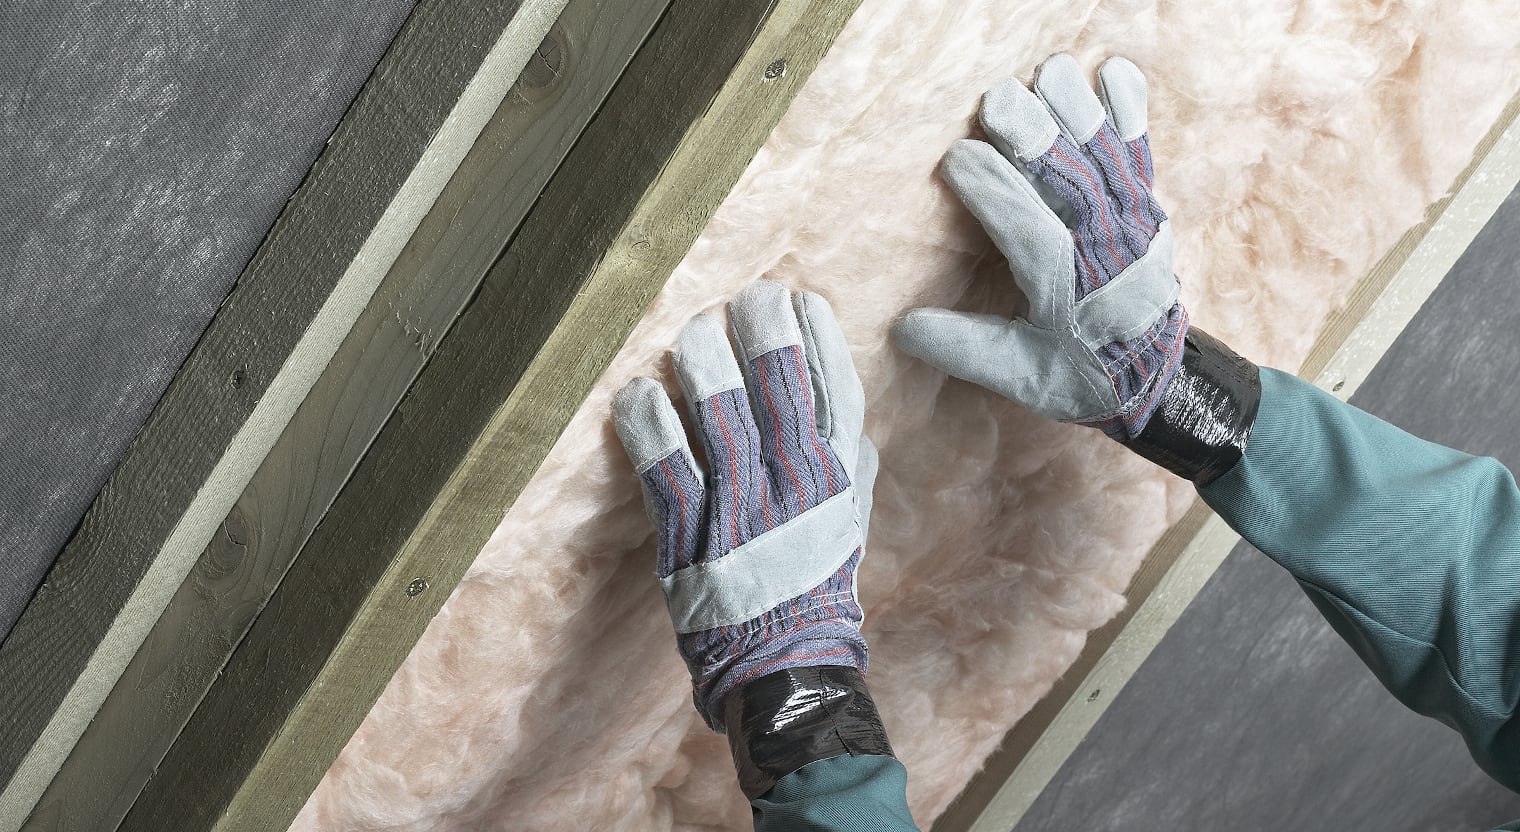 Un travailleur de la construction utilise un matériau isolant tout en portant des gants.